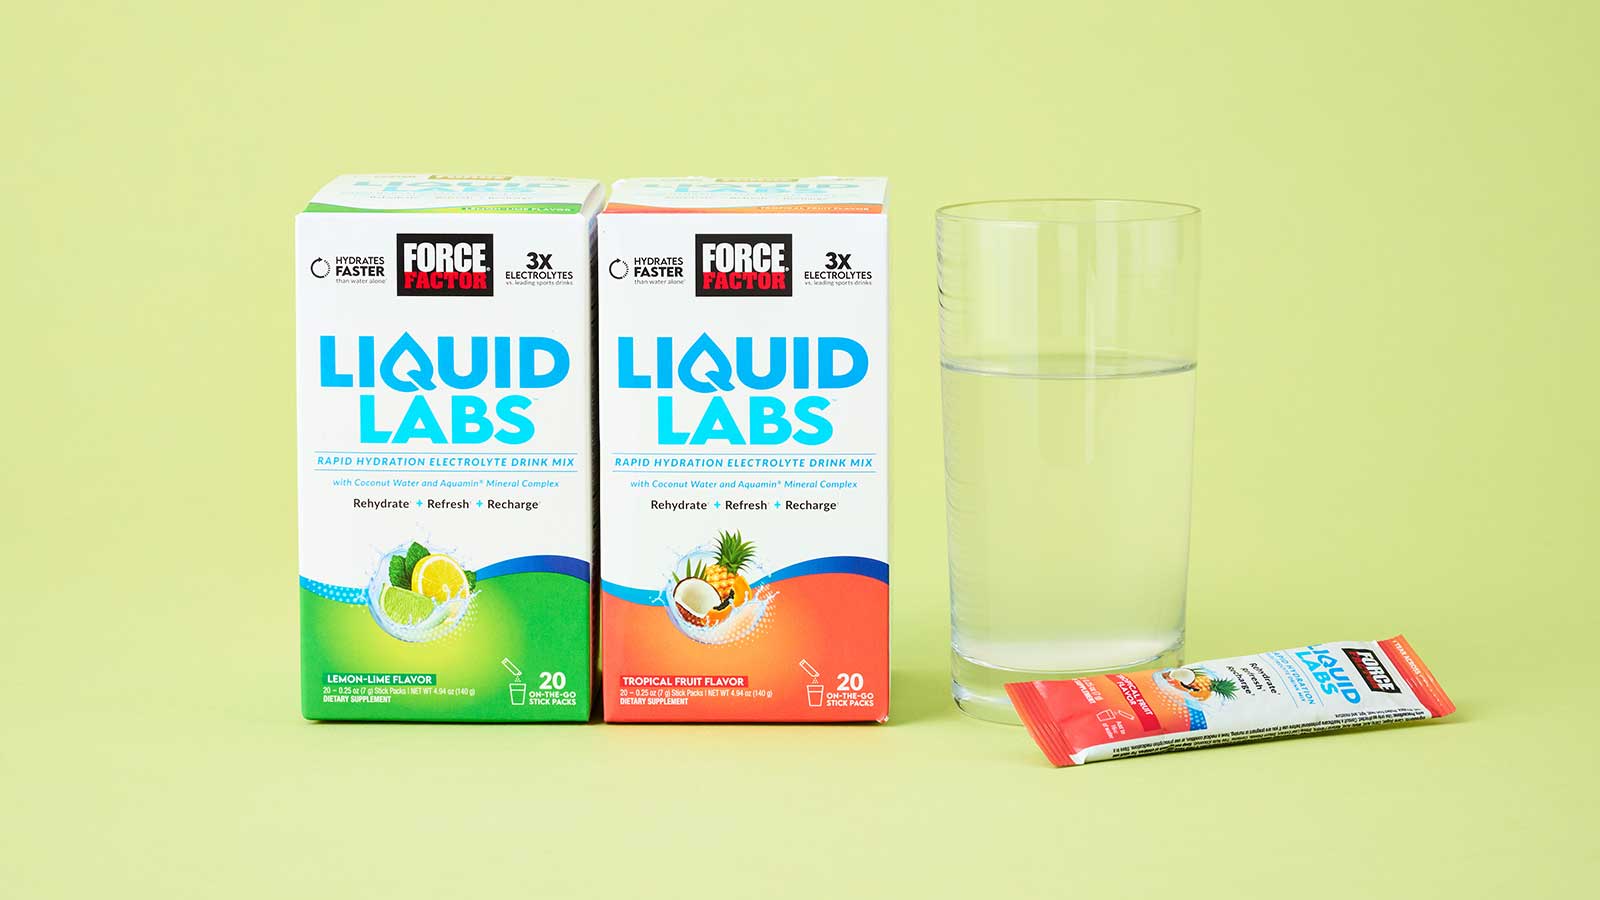 iHerb取扱商品のフォースファクター《Liquid Labs トロピカルフルーツ》の製品画像。